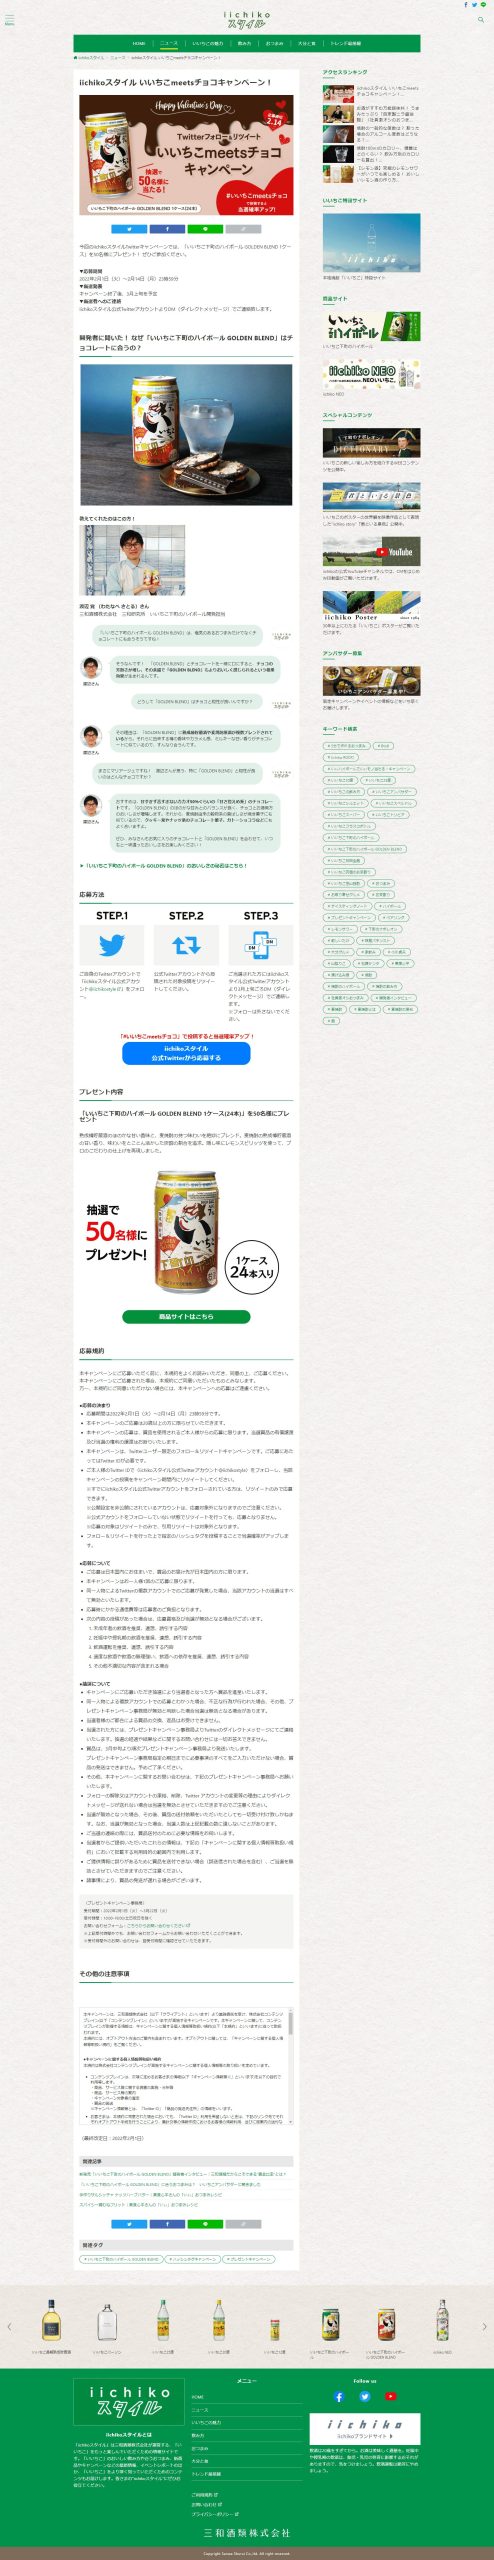 イメージランド 超 創造素材100 日本 温泉 Vol.2 Windows Mac 935556 NEW売り切れる前に☆